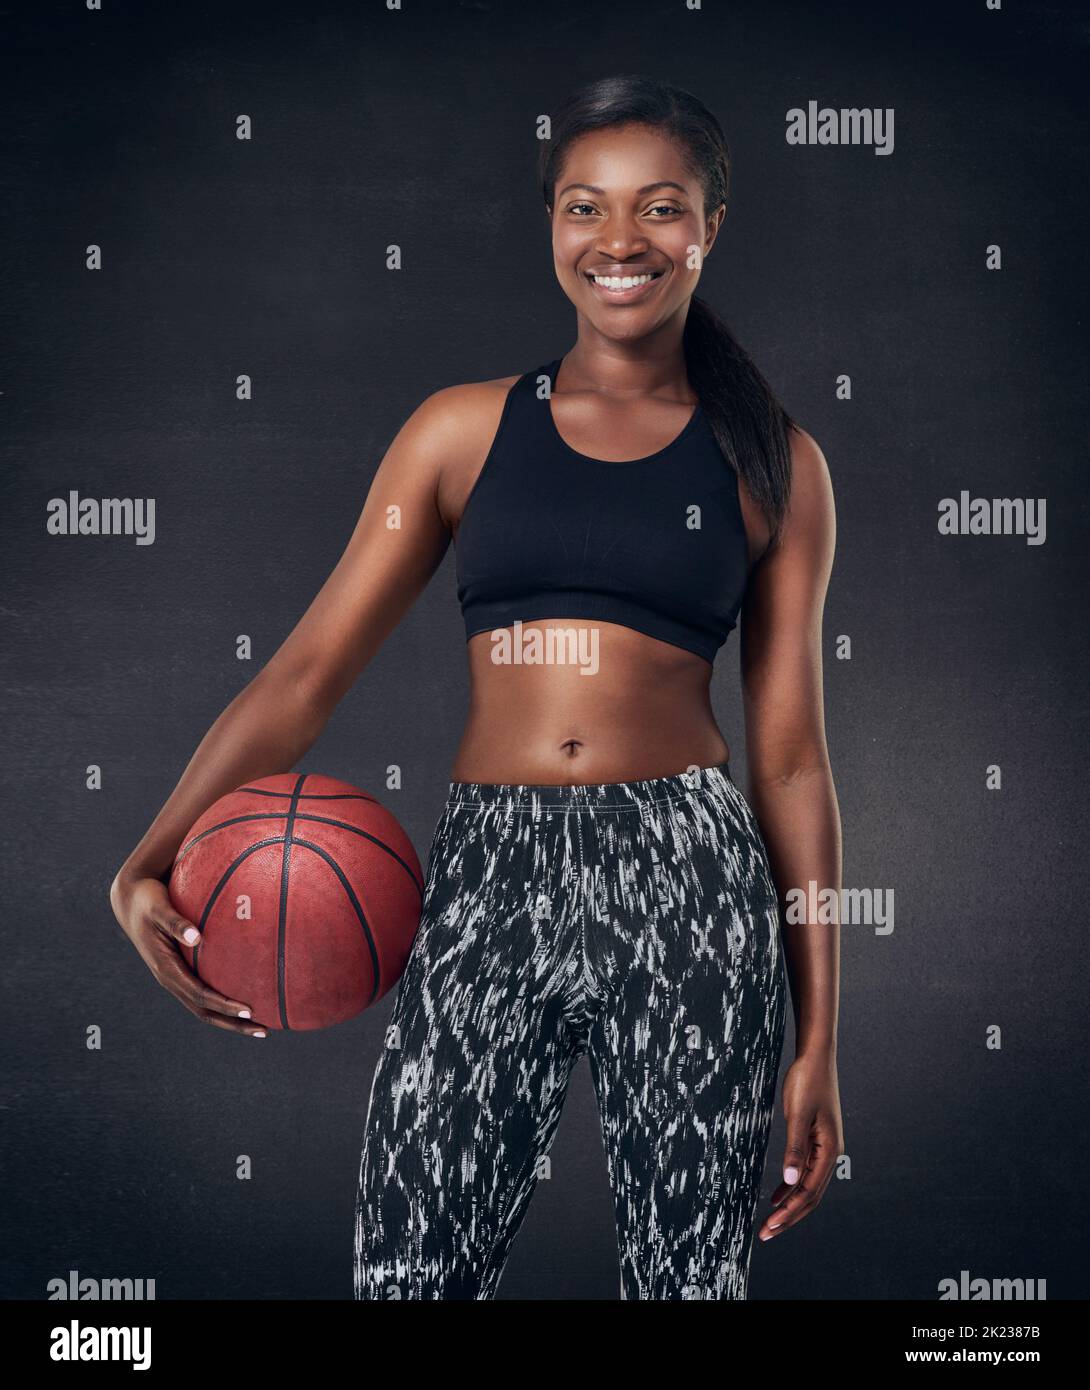 Lasst uns Basketball spielen. Studioaufnahme einer schönen jungen Frau, die einen Basketball vor schwarzem Hintergrund hält. Stockfoto